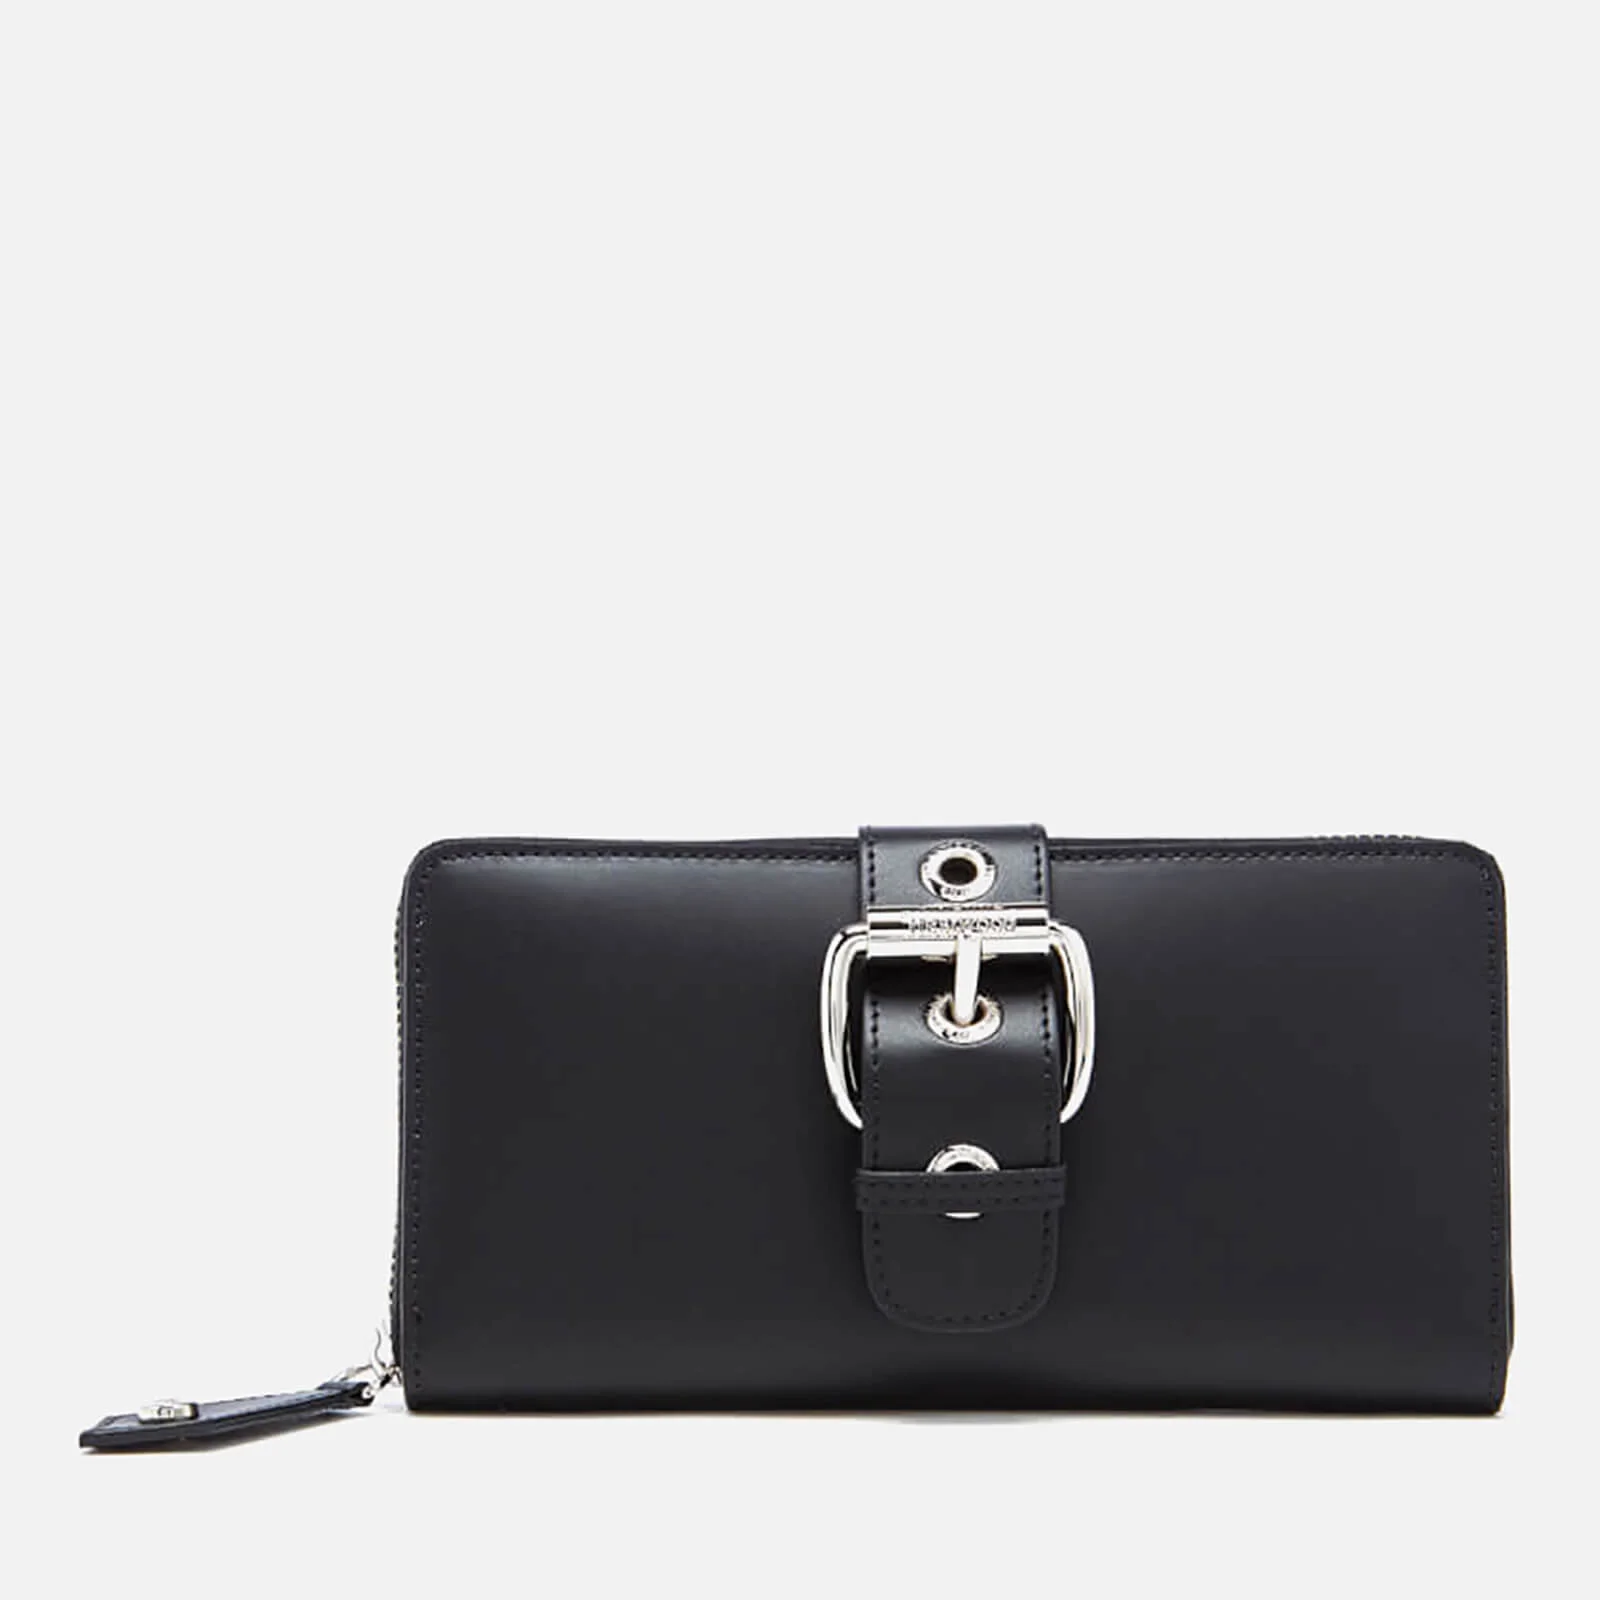 Vivienne Westwood Women's Alex Buckle Zip Around Wallet - Black Image 1